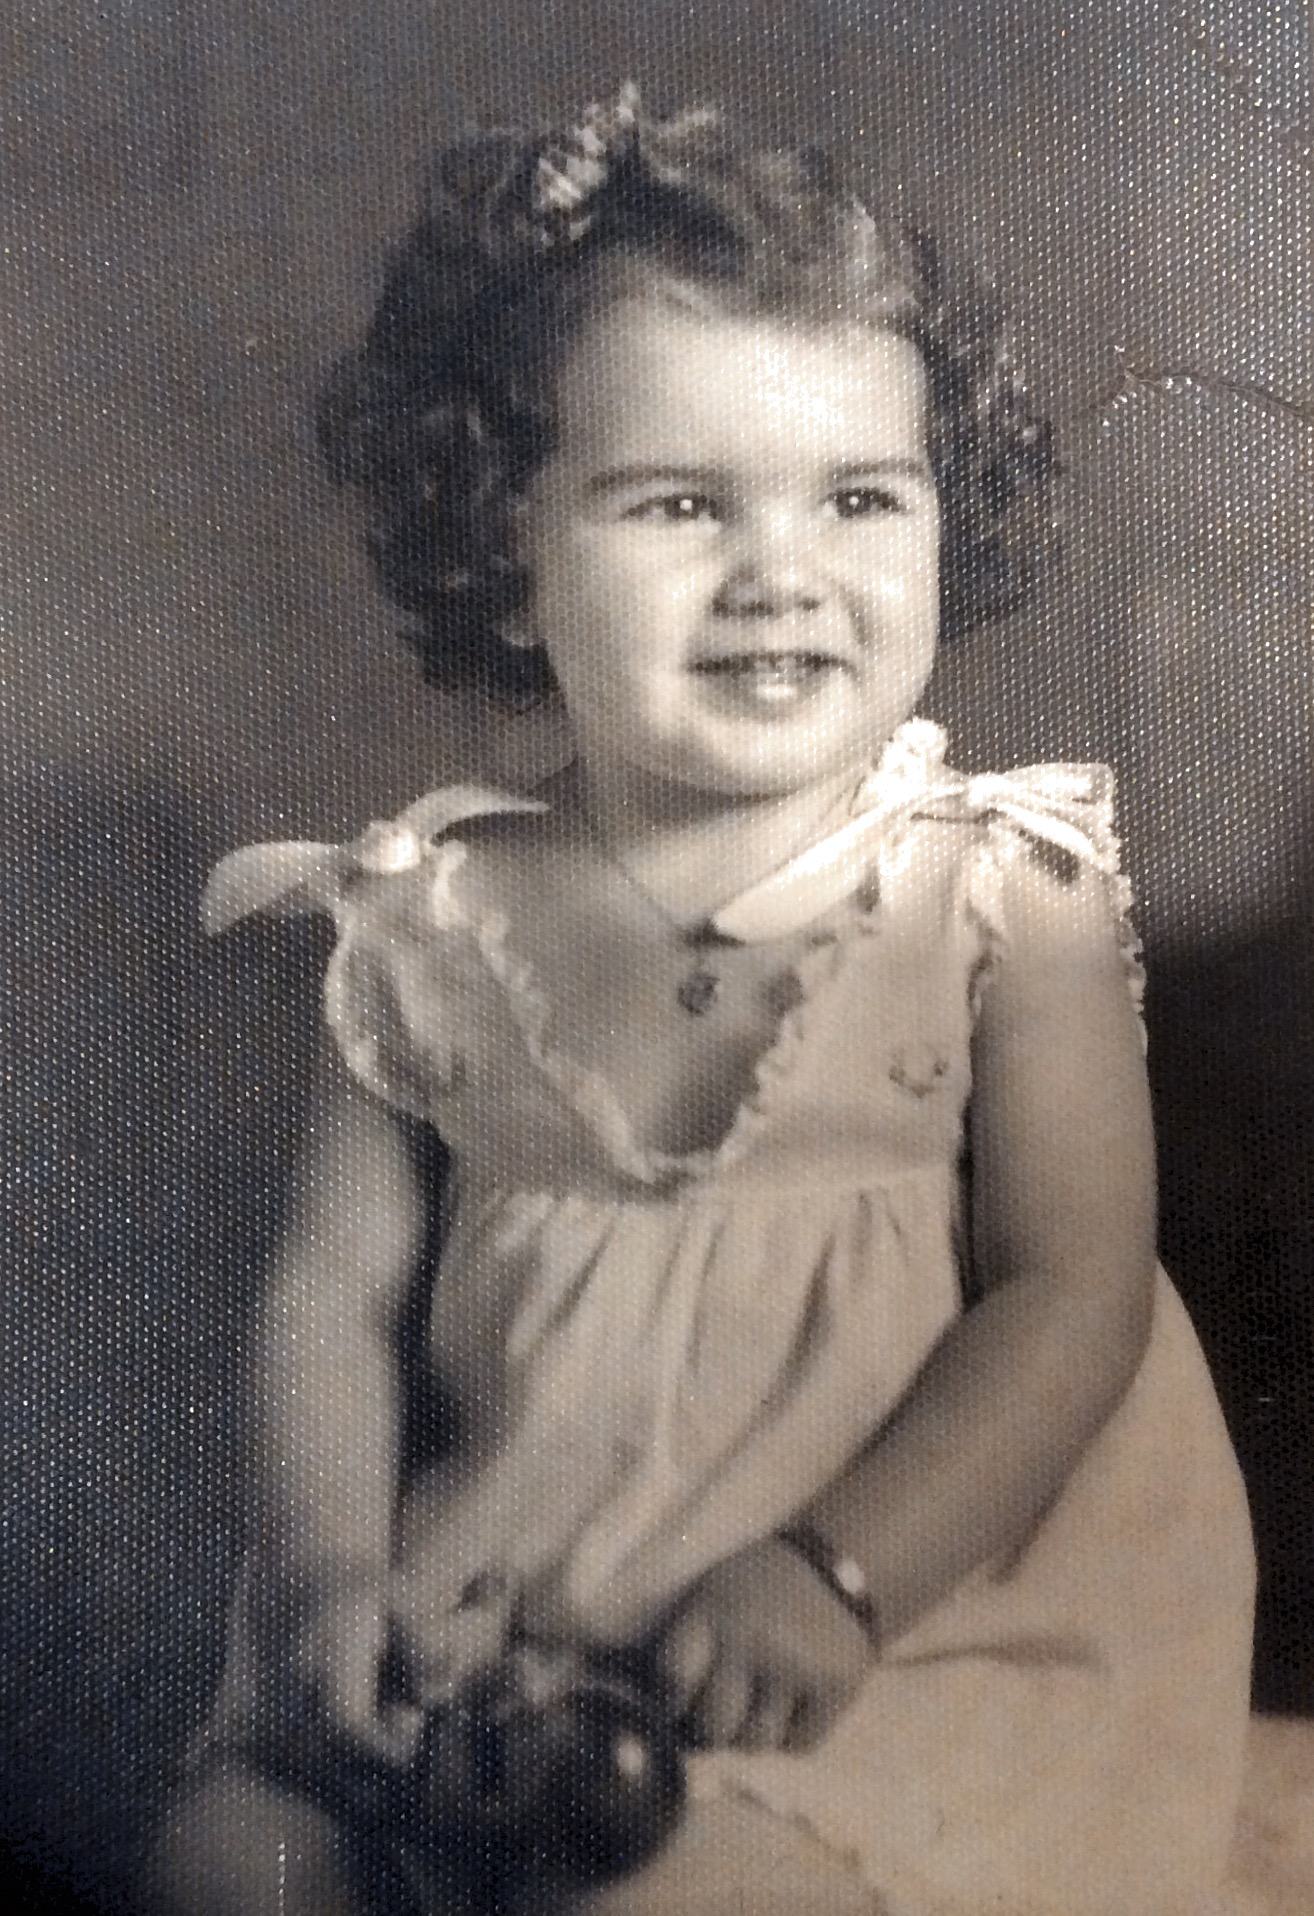 Judy @ 19 1/2 months Feb 1950